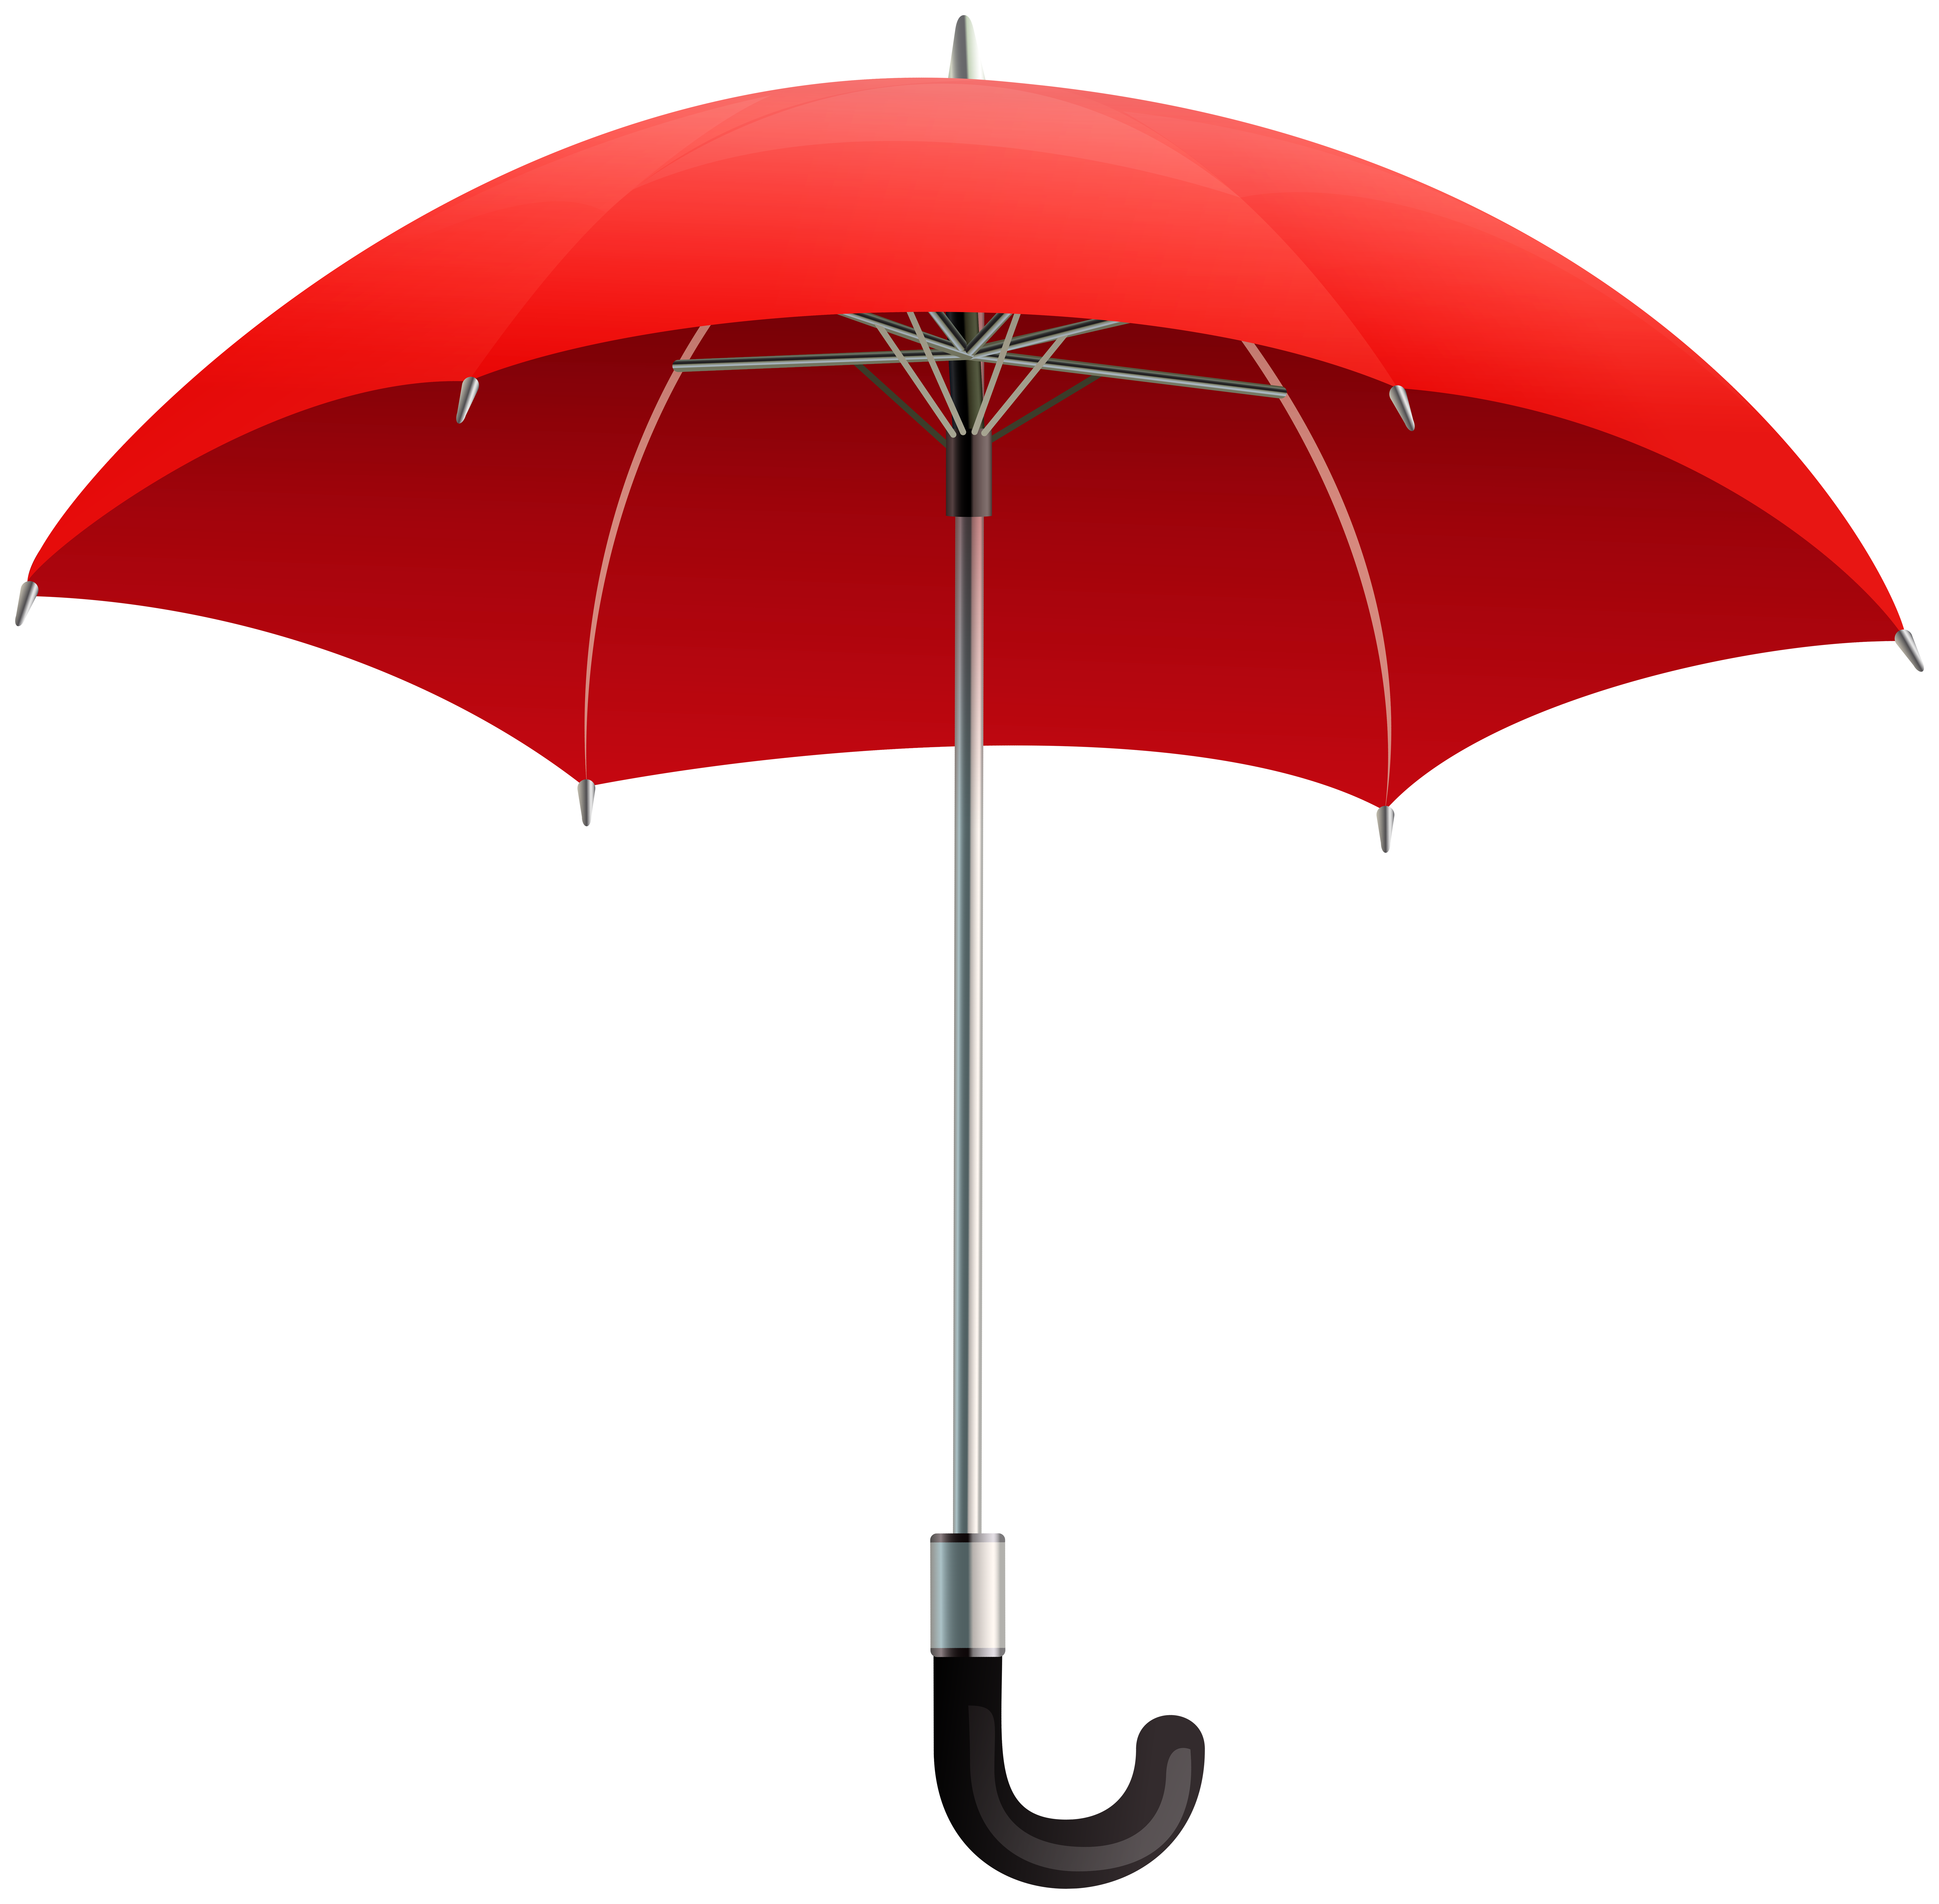 Red Umbrella Transparent Image.